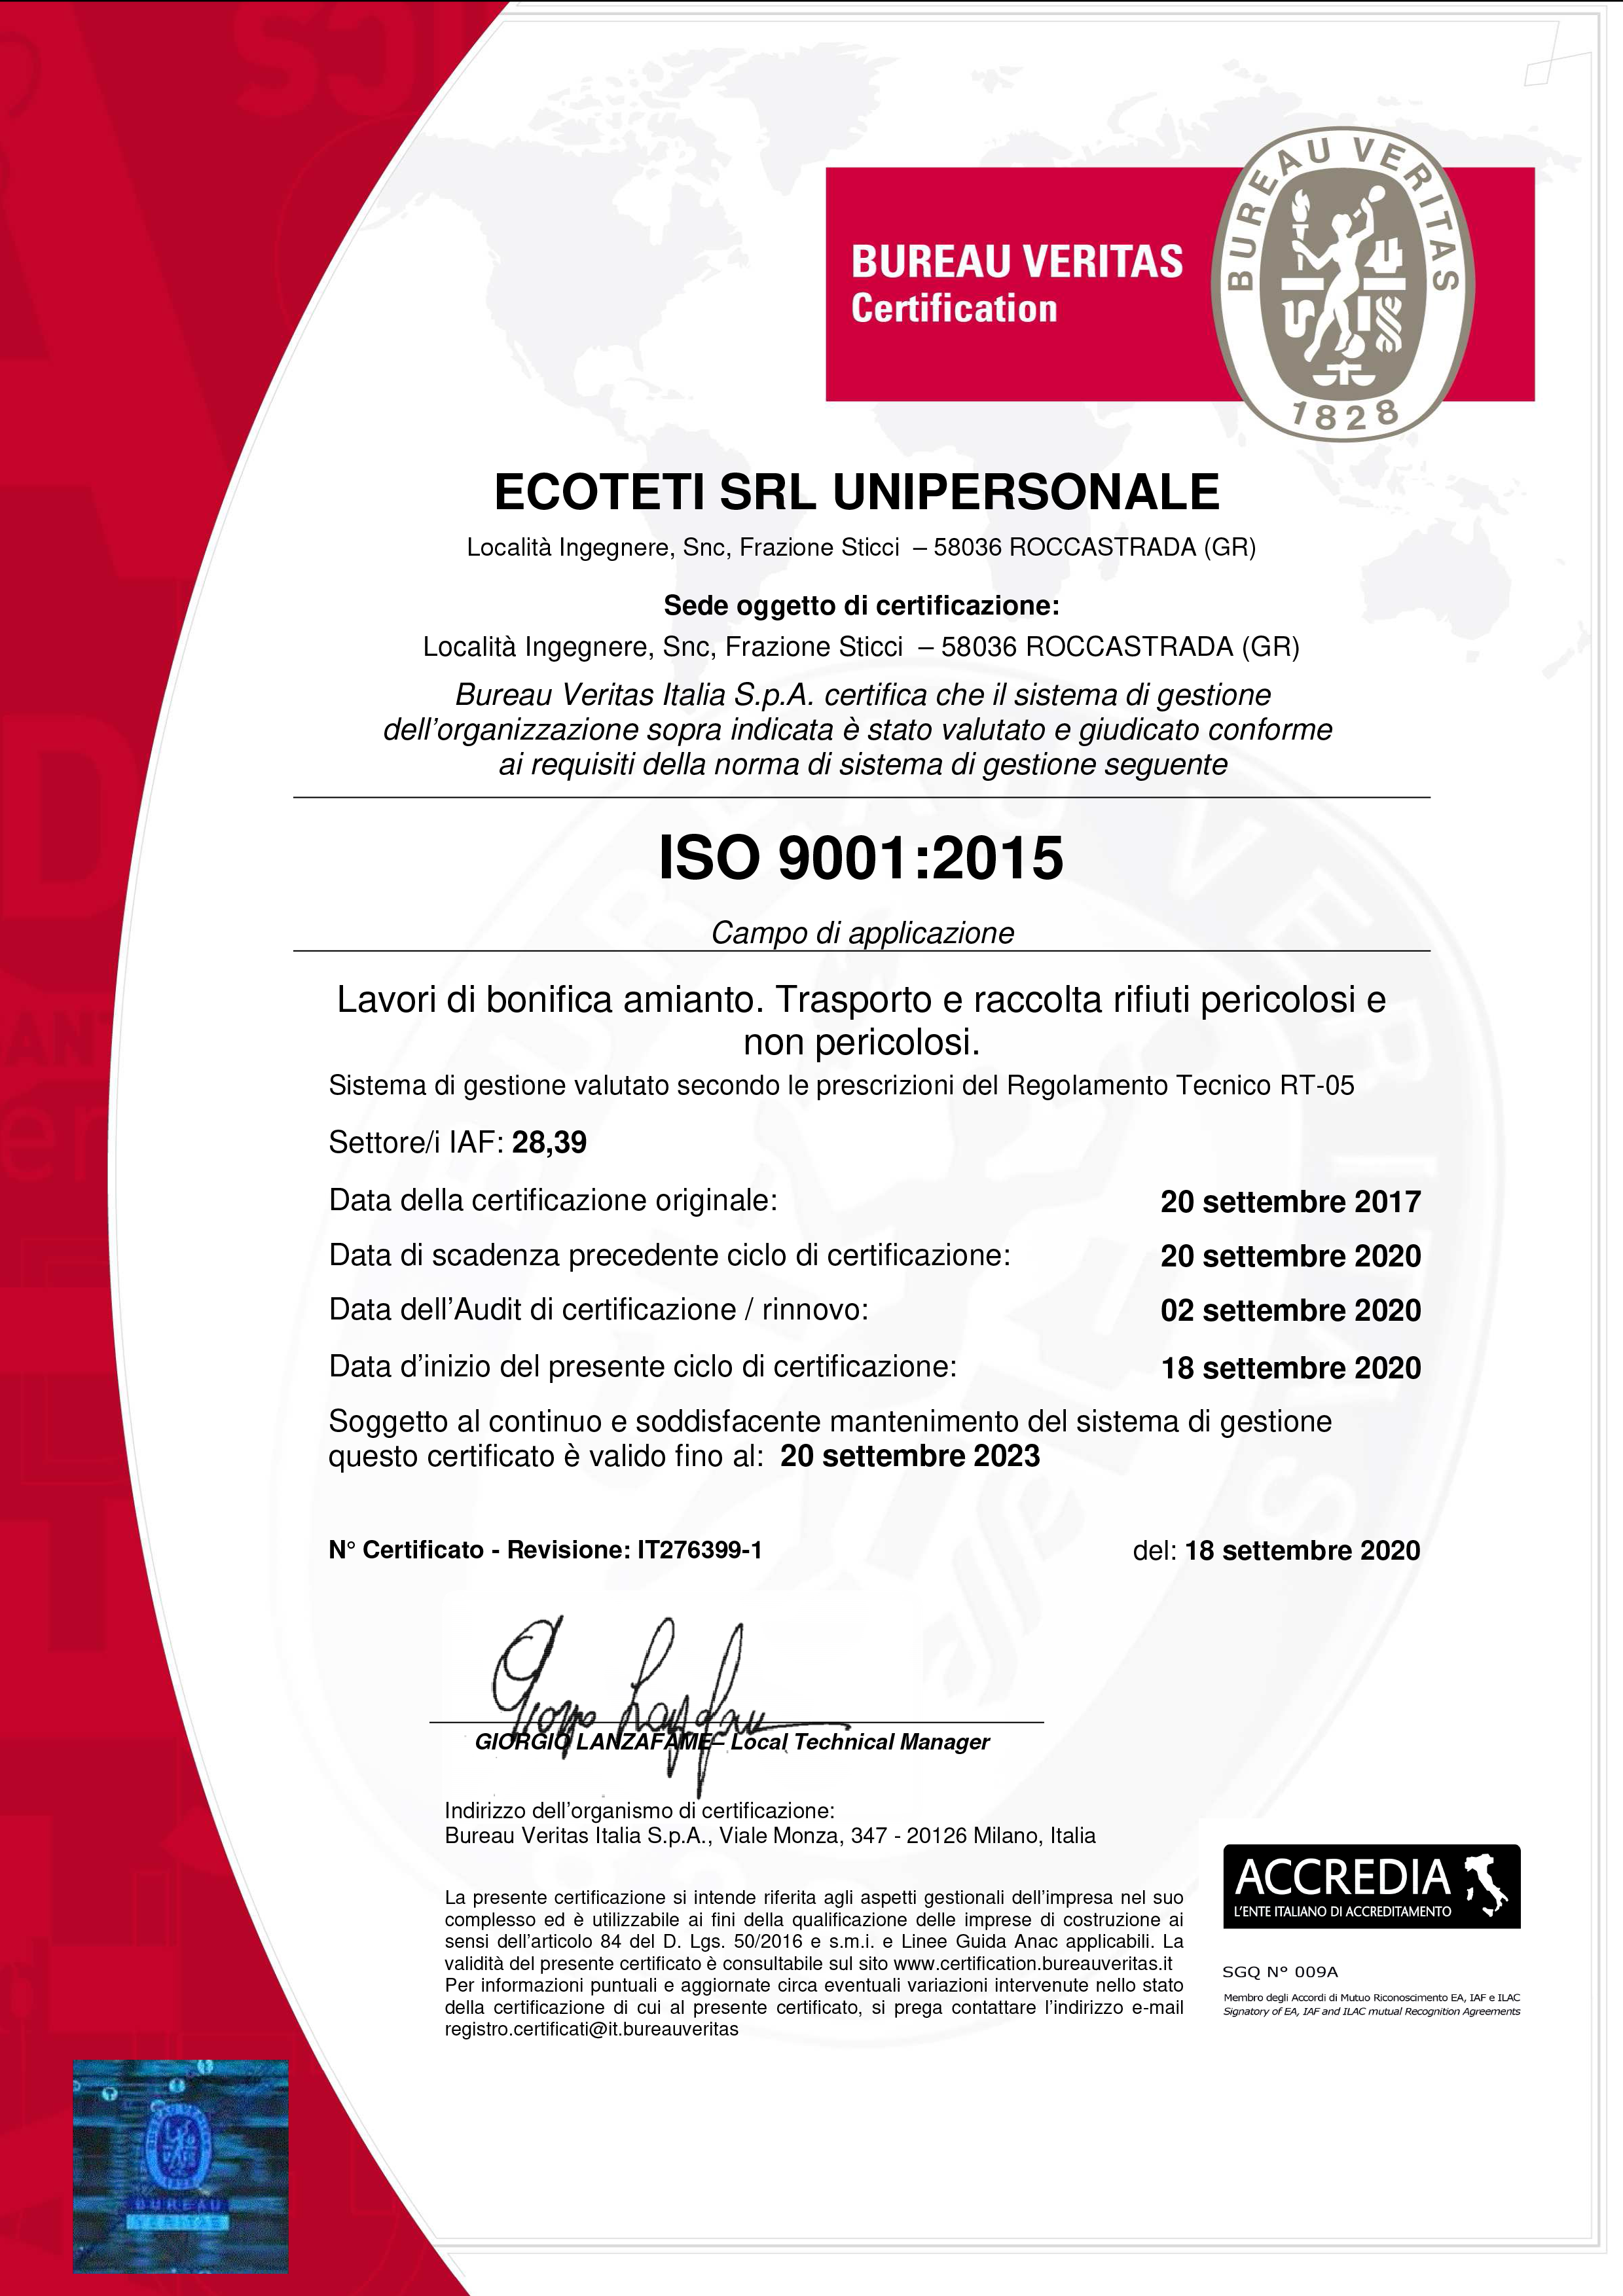 Ecoteti srl Azienda Certificata ISO 9001:2015 per Lavori di bonifica amianto e Trasporto e raccolta rifiuti pericolosi e non pericolosi.